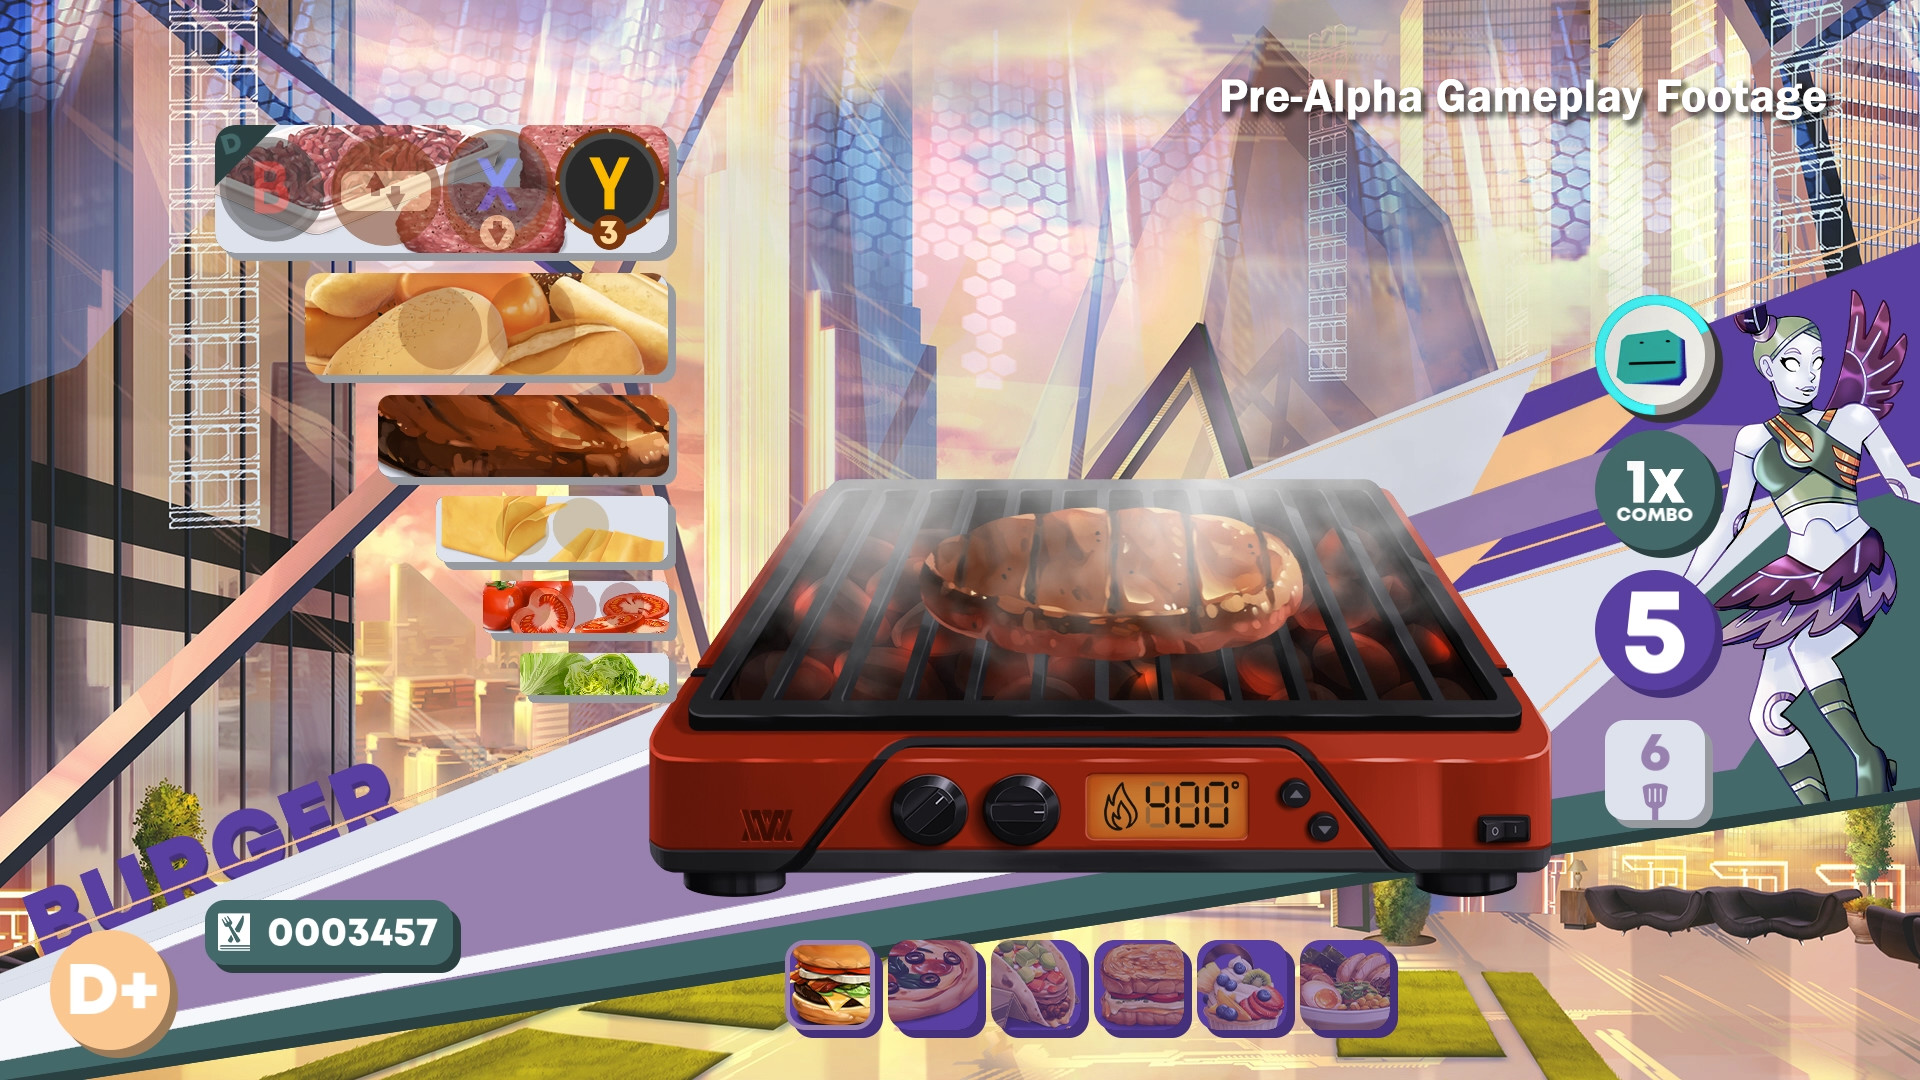 餐厅模拟游戏《烹调上菜永恒》公布 明年登陆Steam